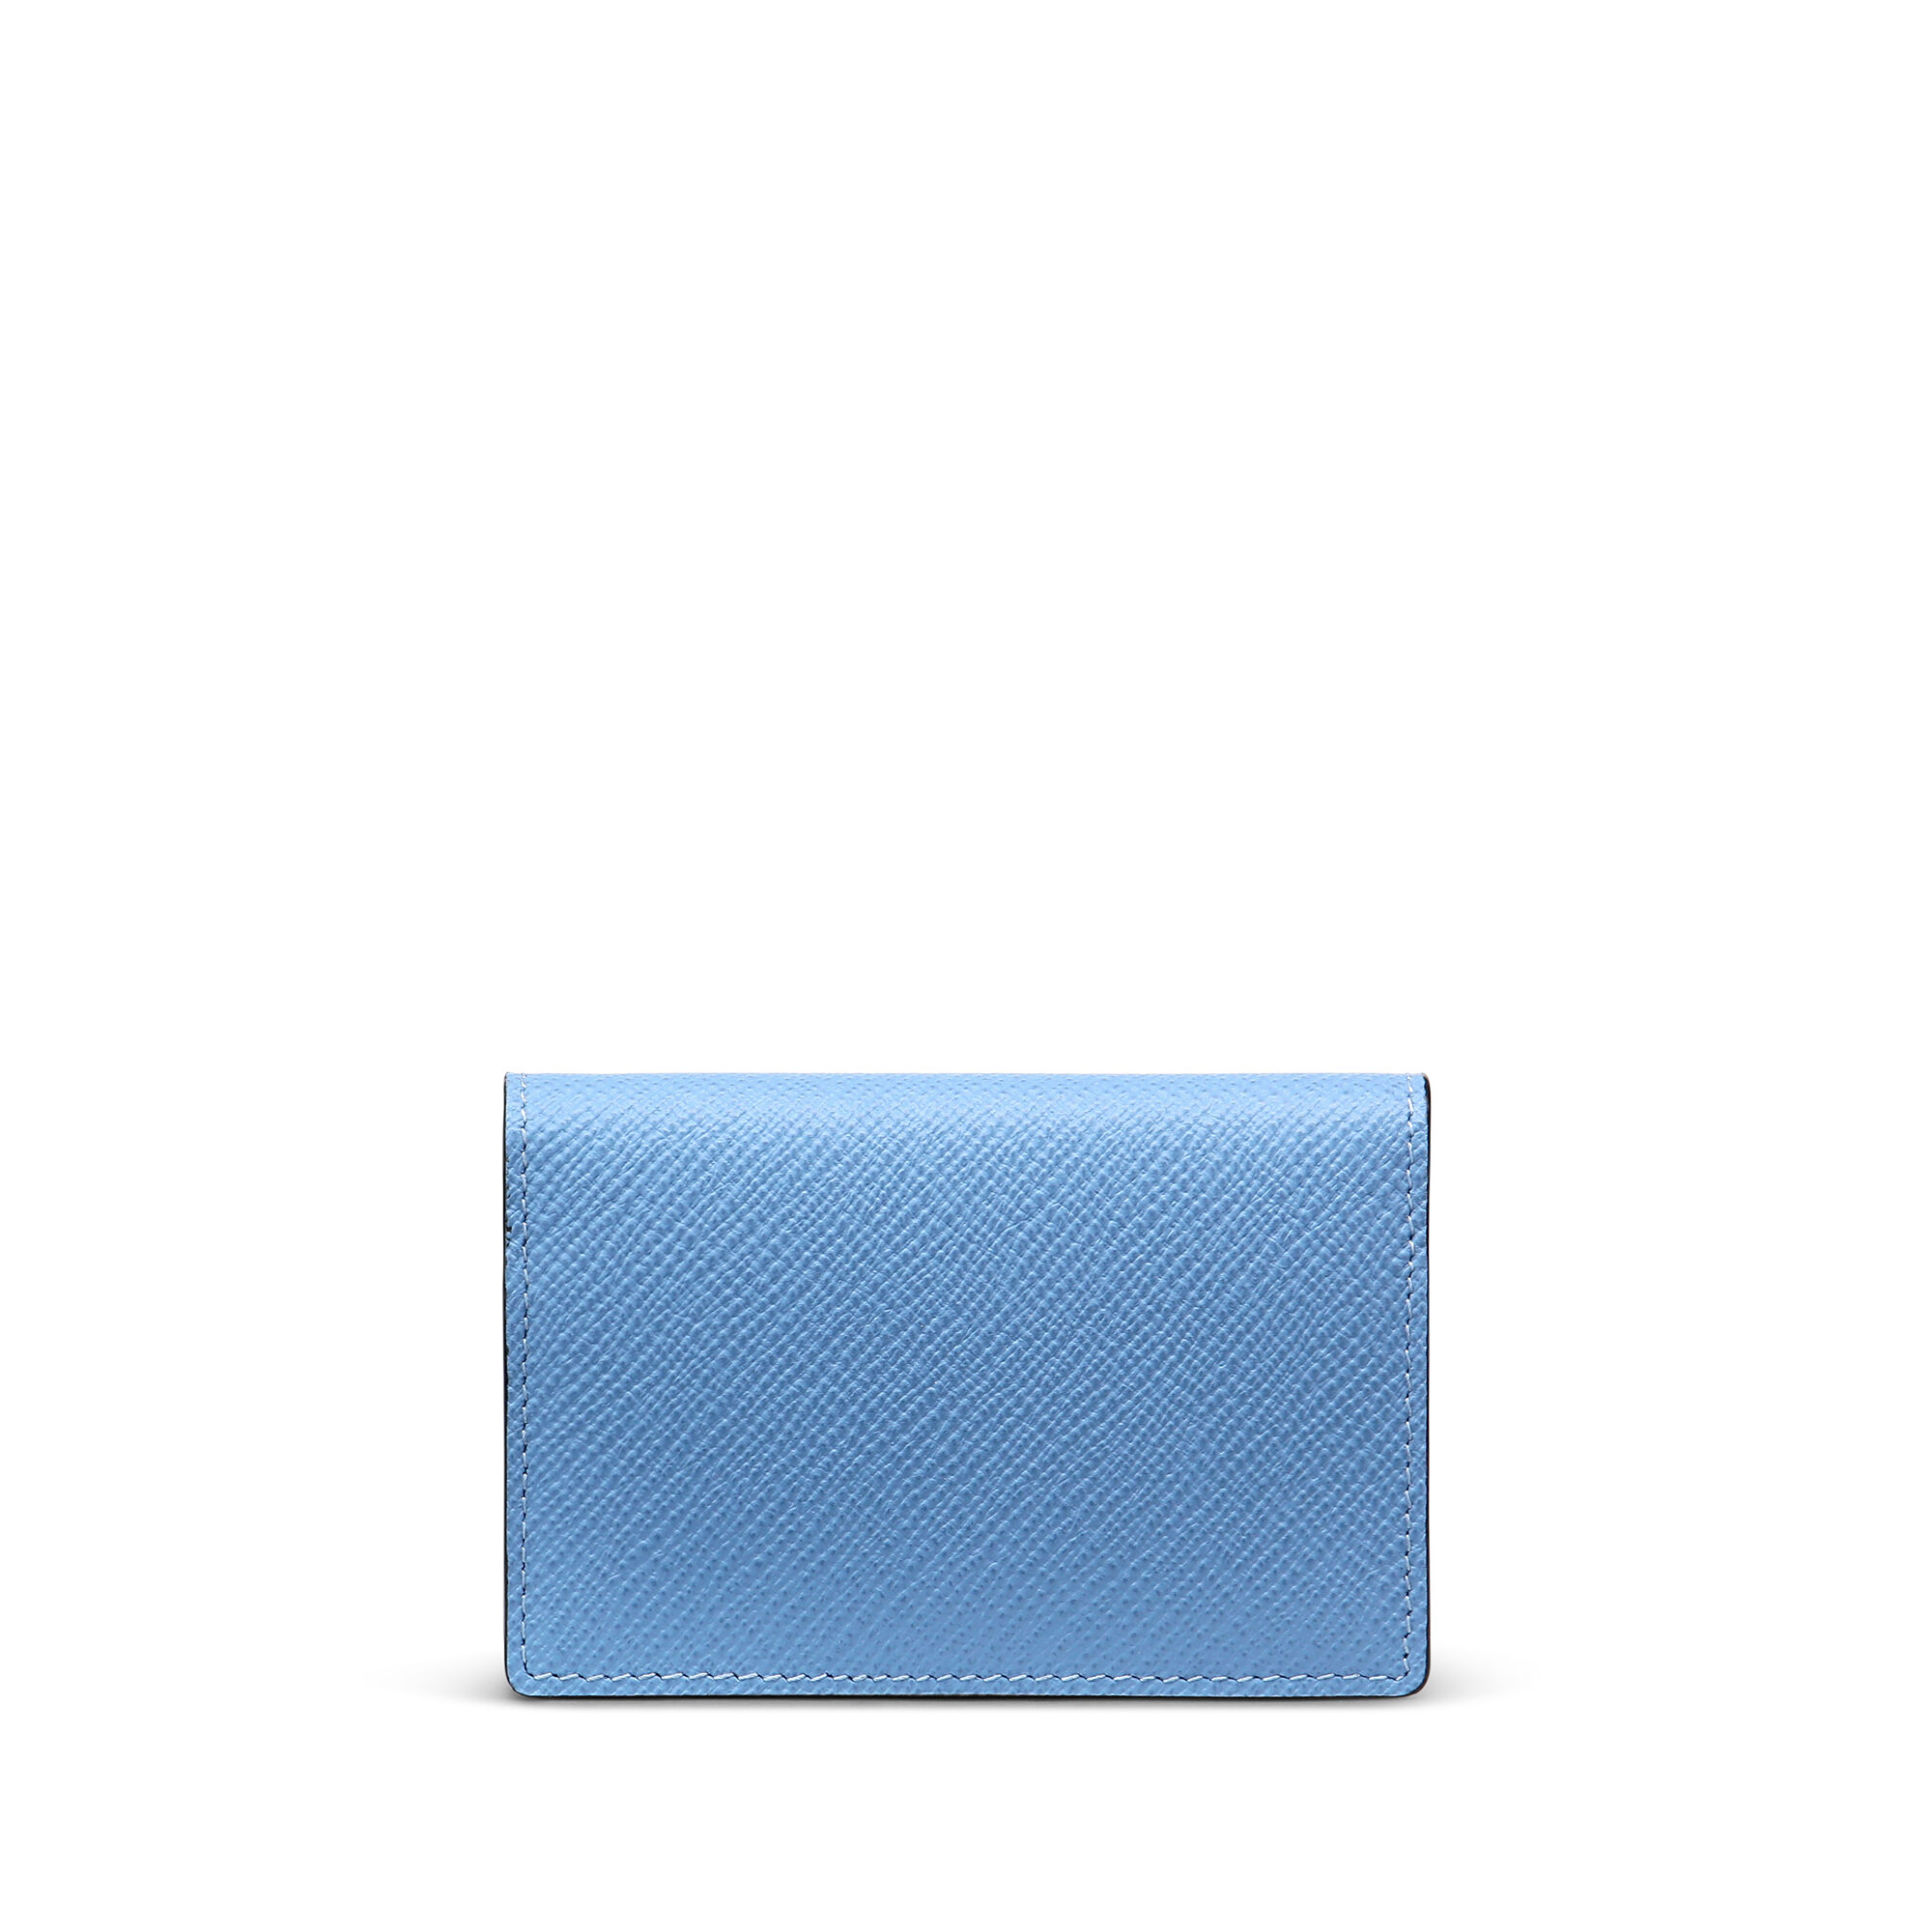 Panamaレザー二つ折りカードケース、スナップボタン付き in nile blue